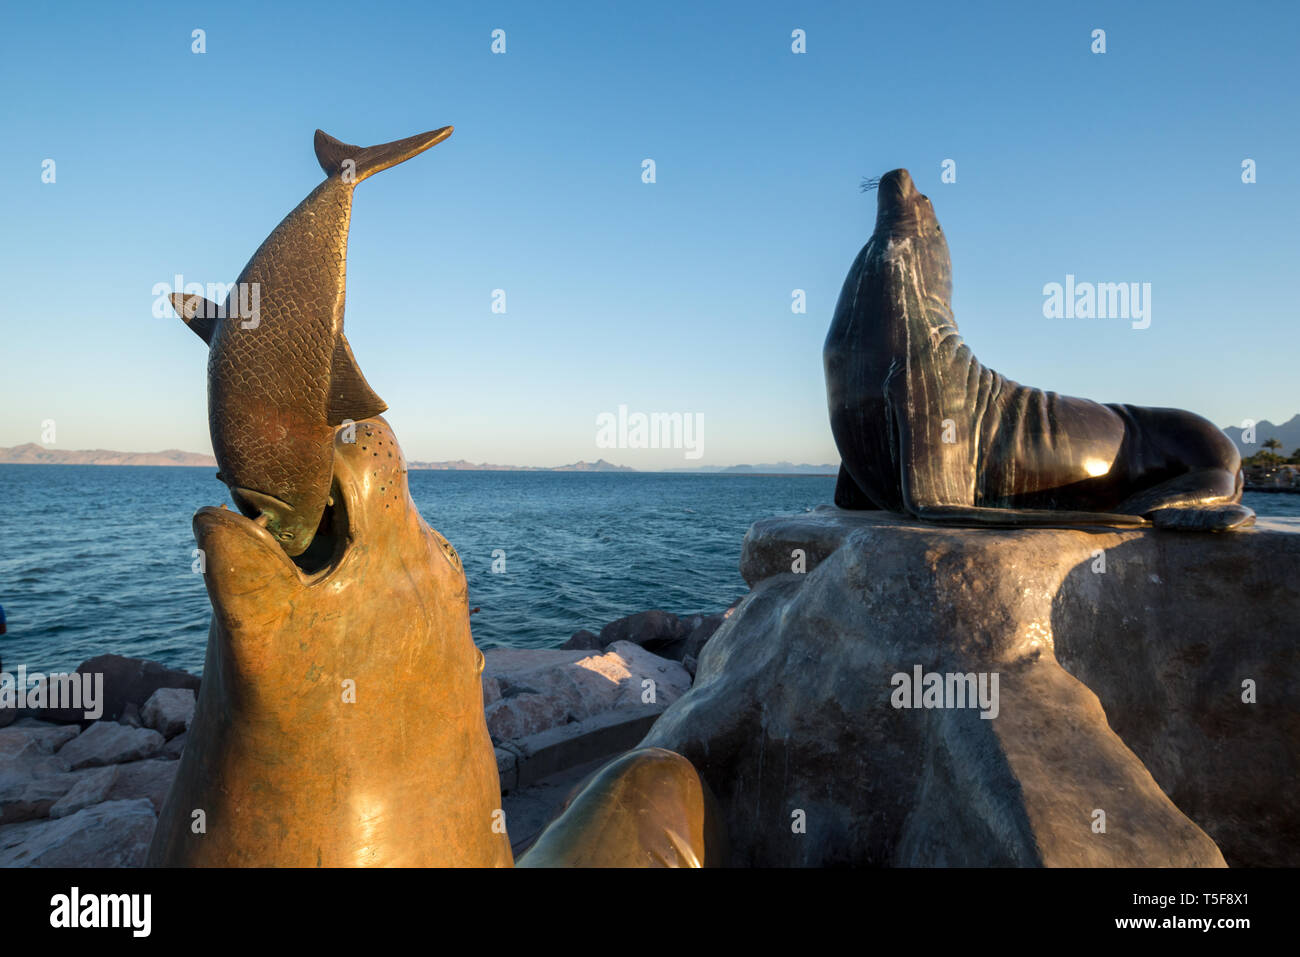 Sea lion sculptures on the waterfront of Loreto, Baja California Sur, Mexico. Stock Photo